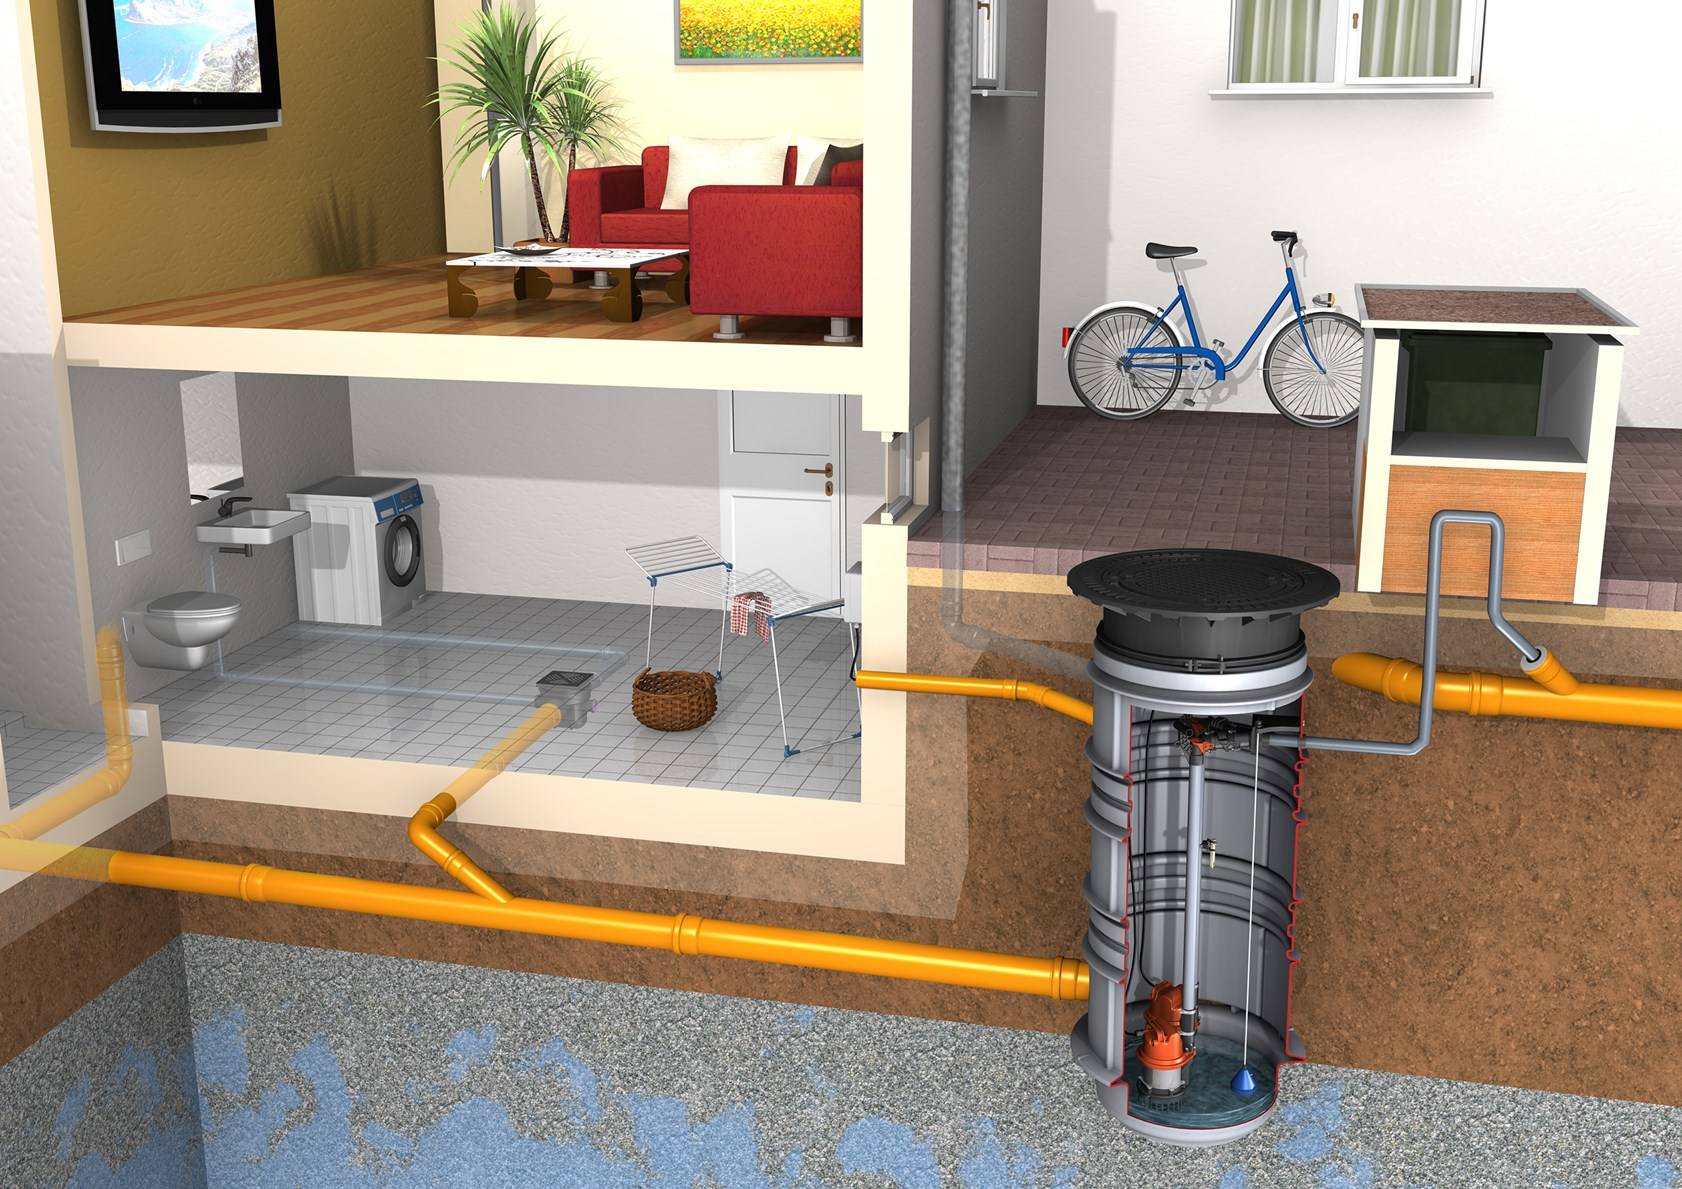 Фекальные насосы для канализации в частном доме - технические характеристики